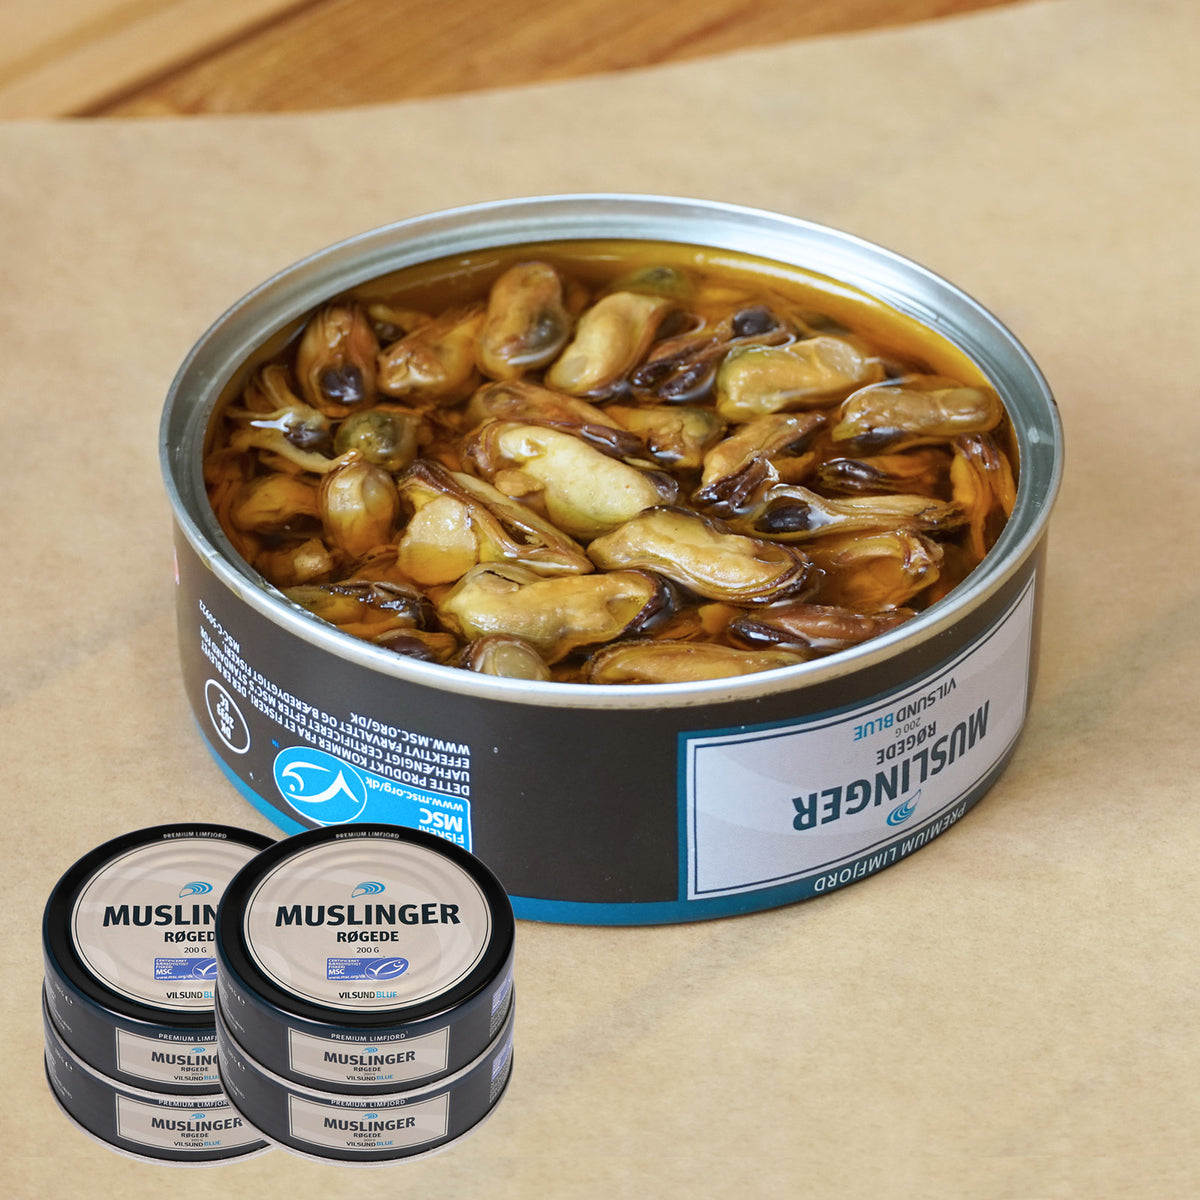 MSC 認証 無添加 ムール貝 燻製 オイル漬け 缶詰 BPAフリー (200g×4) ホライズンファームズ